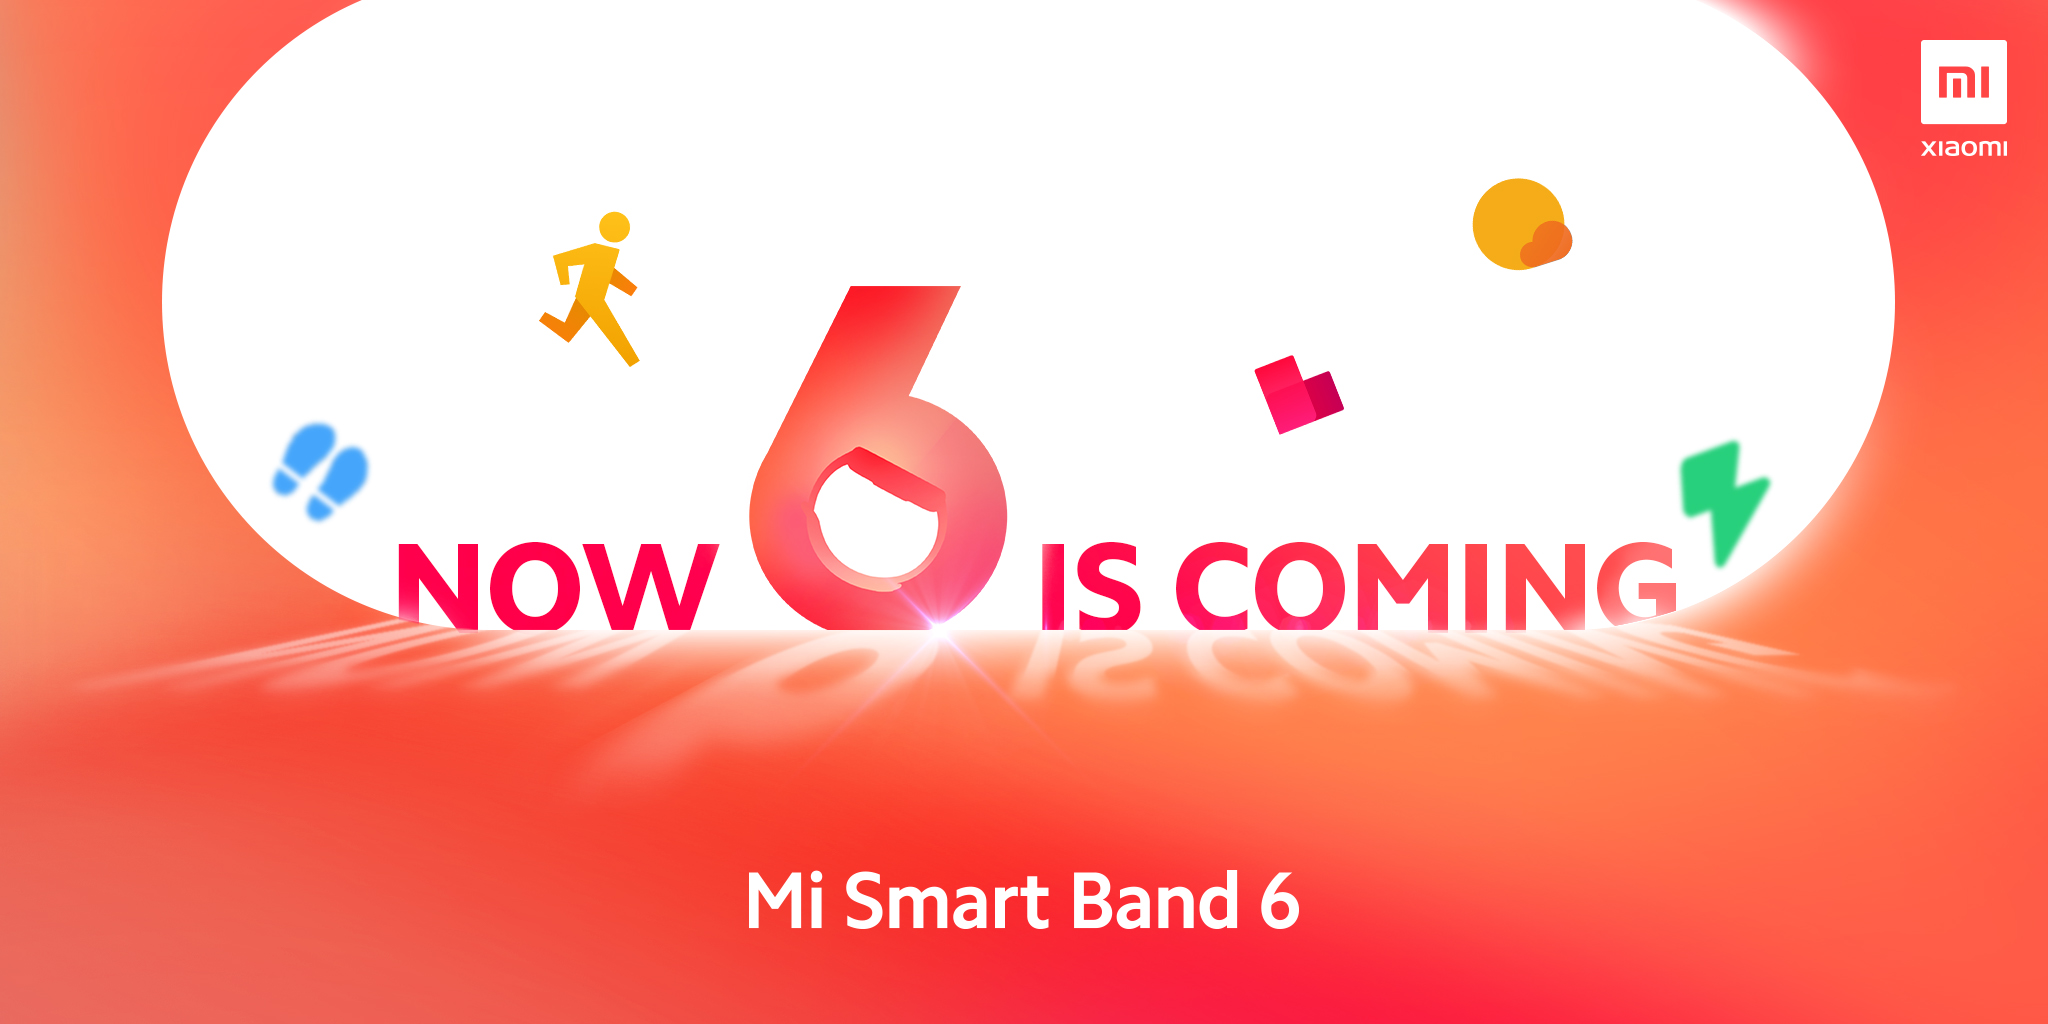  Xiaomi подтвердила анонс Mi Band 6 Xiaomi  - vishenka_na_torte_xiaomi_podtverdila_anons_mi_band_6_v_ponedelnik_picture2_0